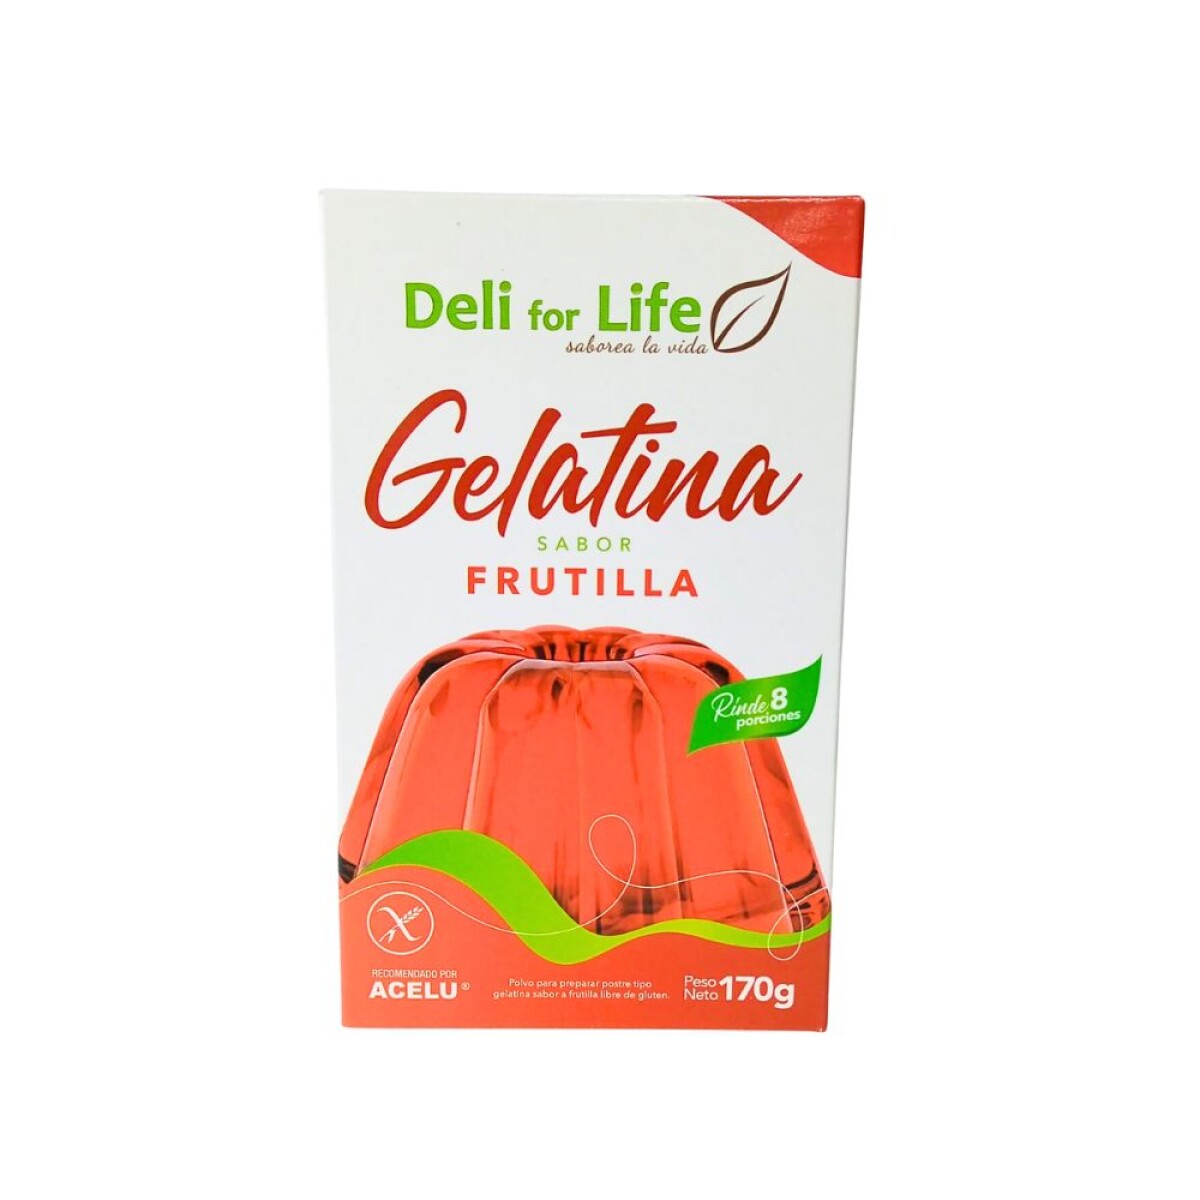 Gelatina Sin Gluten Deli for Life Frutilla 170g 